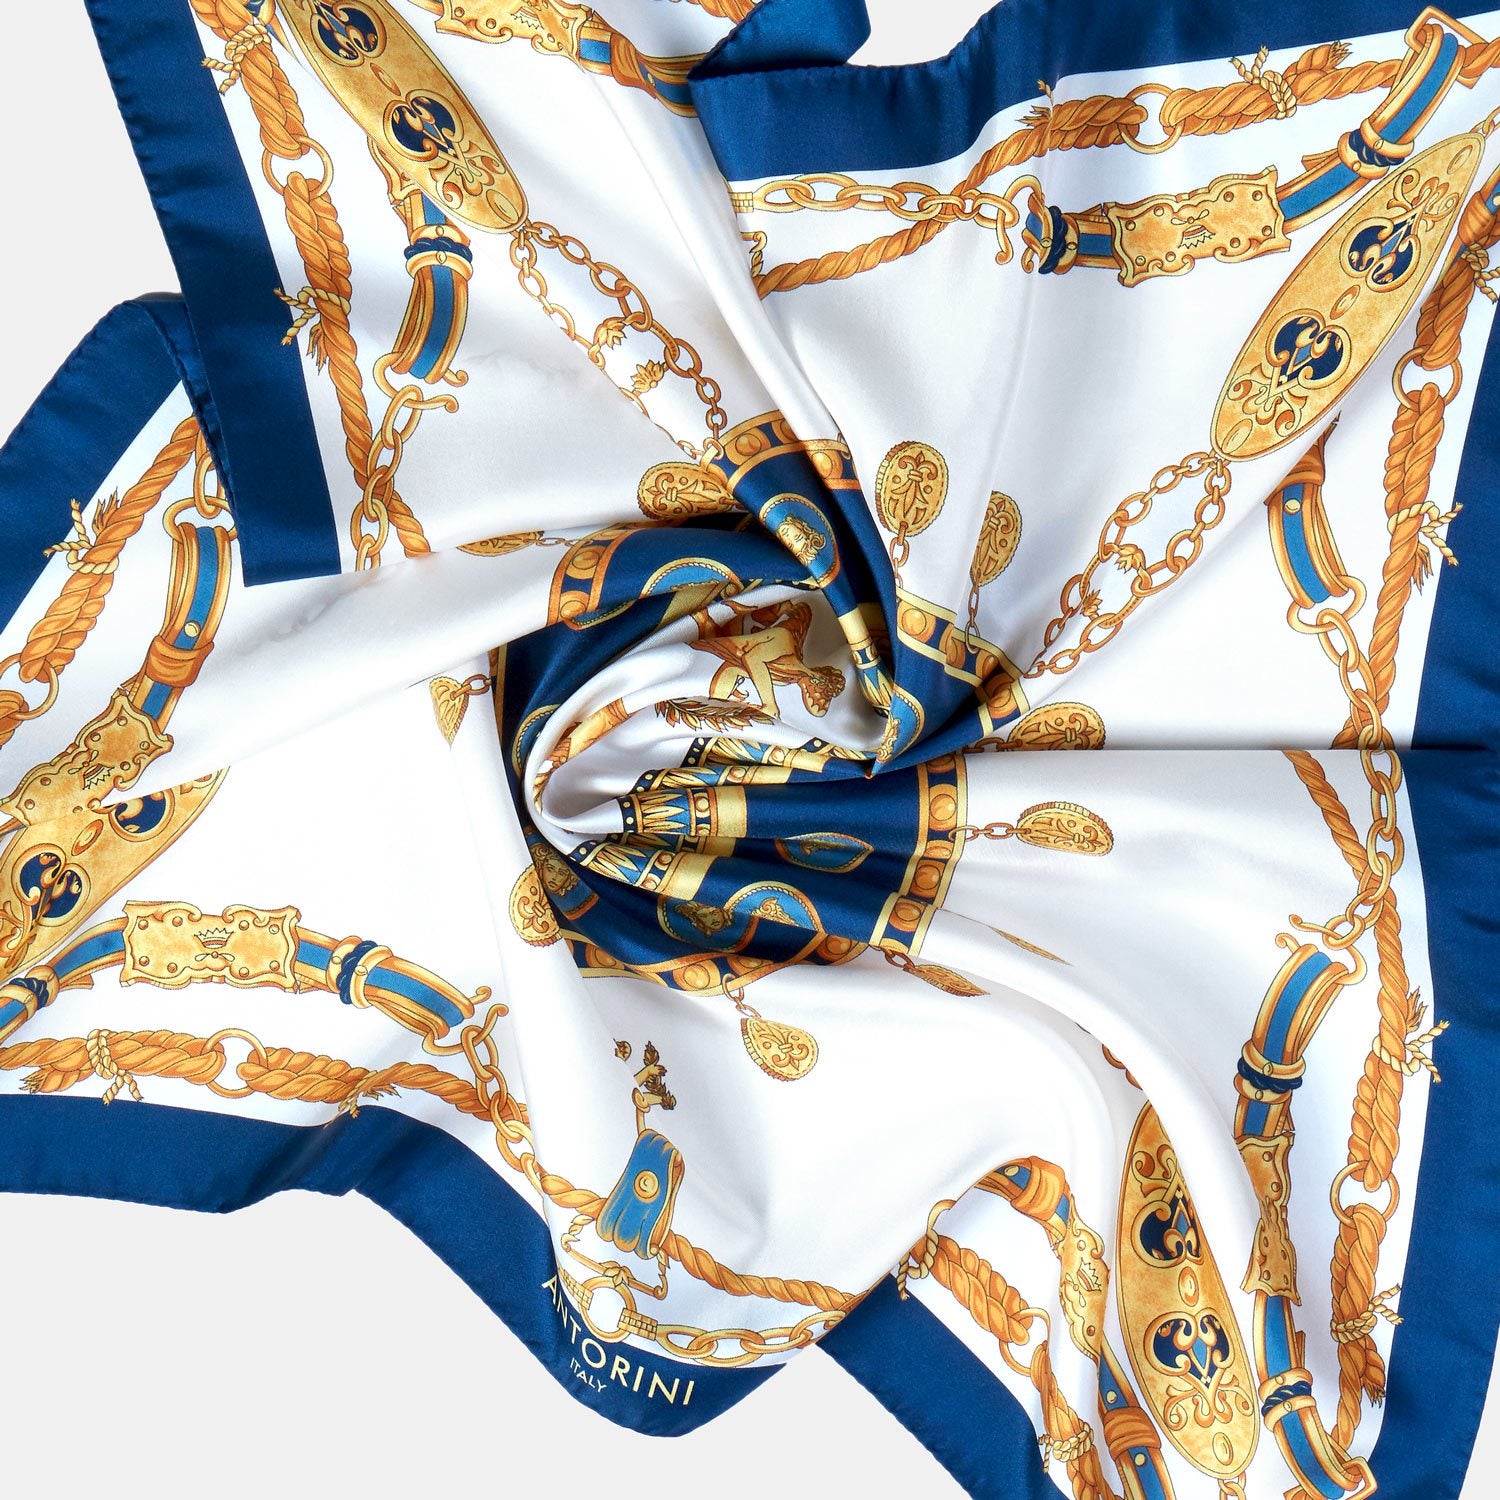 Modrý hedvábný šátek ANTORINI Imperiale z limitované kolekce